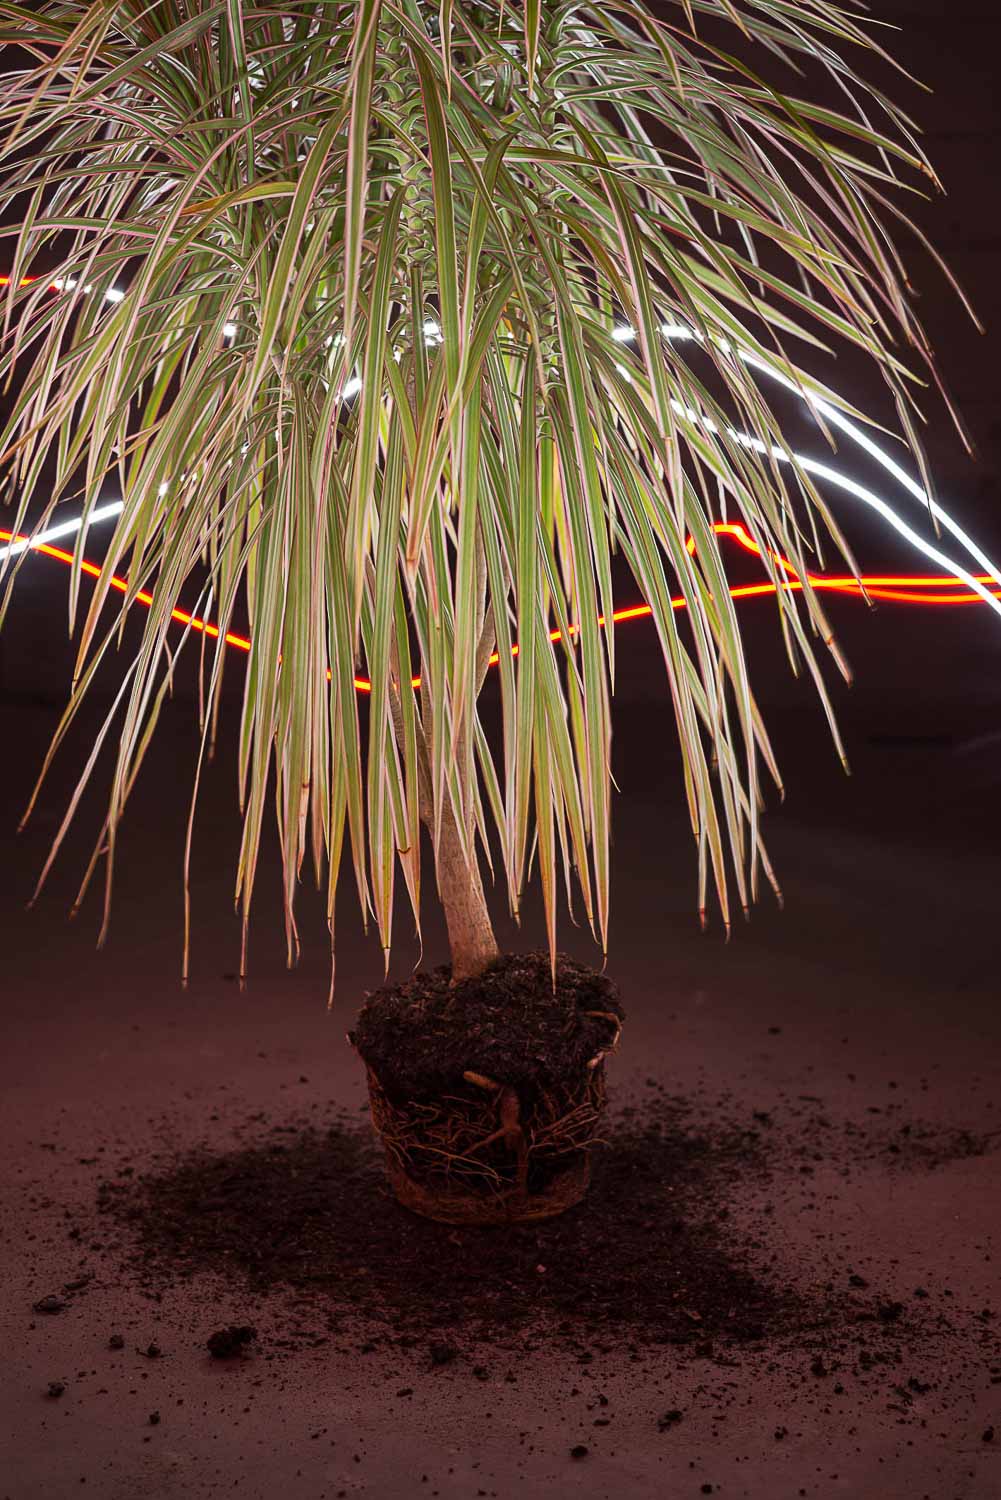 Die Zimmerpflanze ohne Topf wird durch einen Lichtstrahl kunstvoll beleuchtet